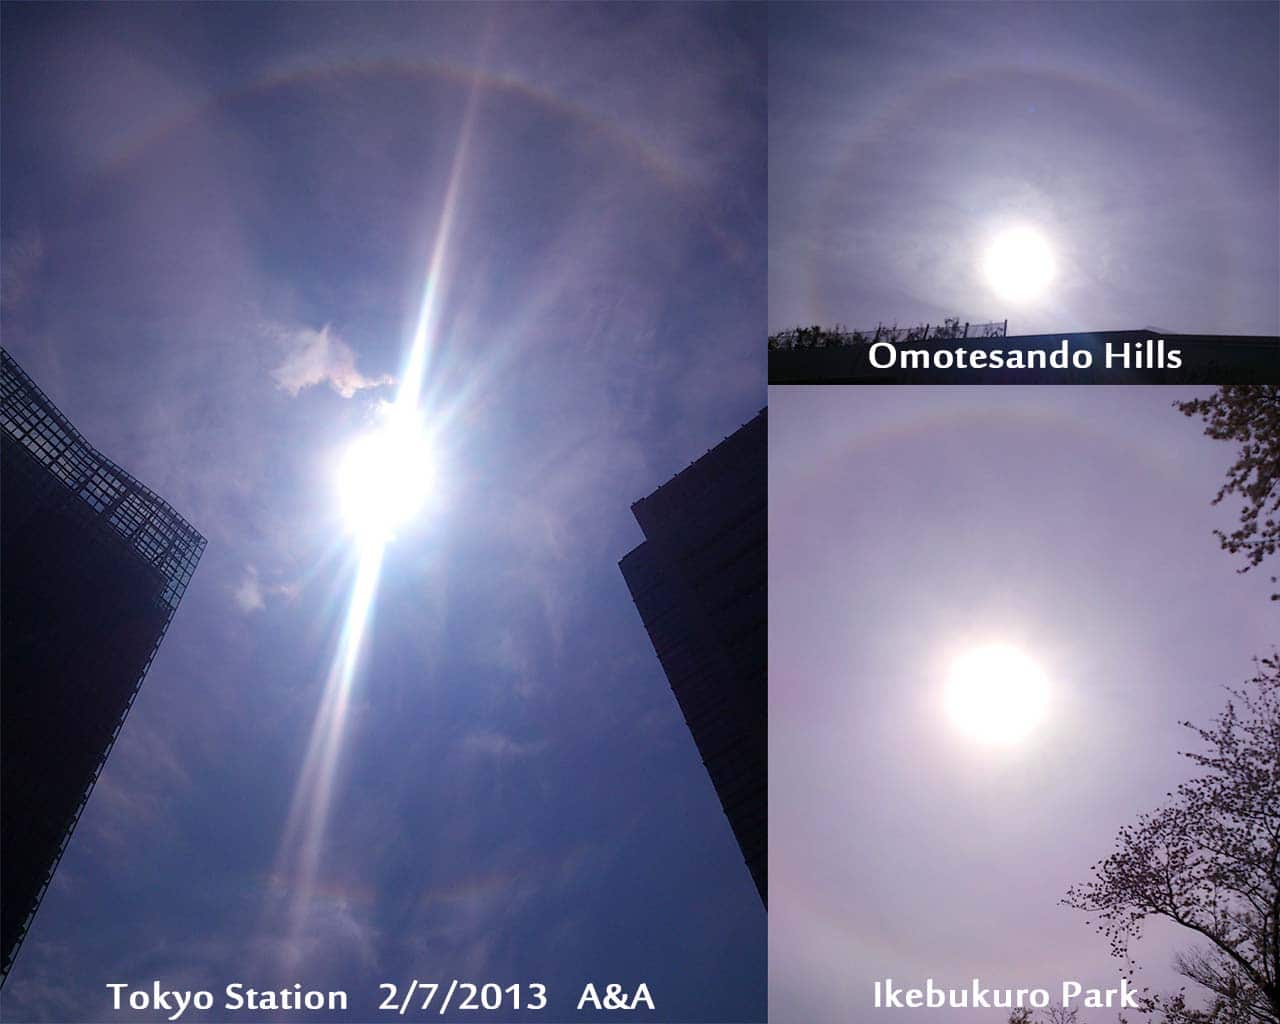 東京駅、表参道ヒルズ、池袋公園で撮影した太陽の周りに虹が出ている写真